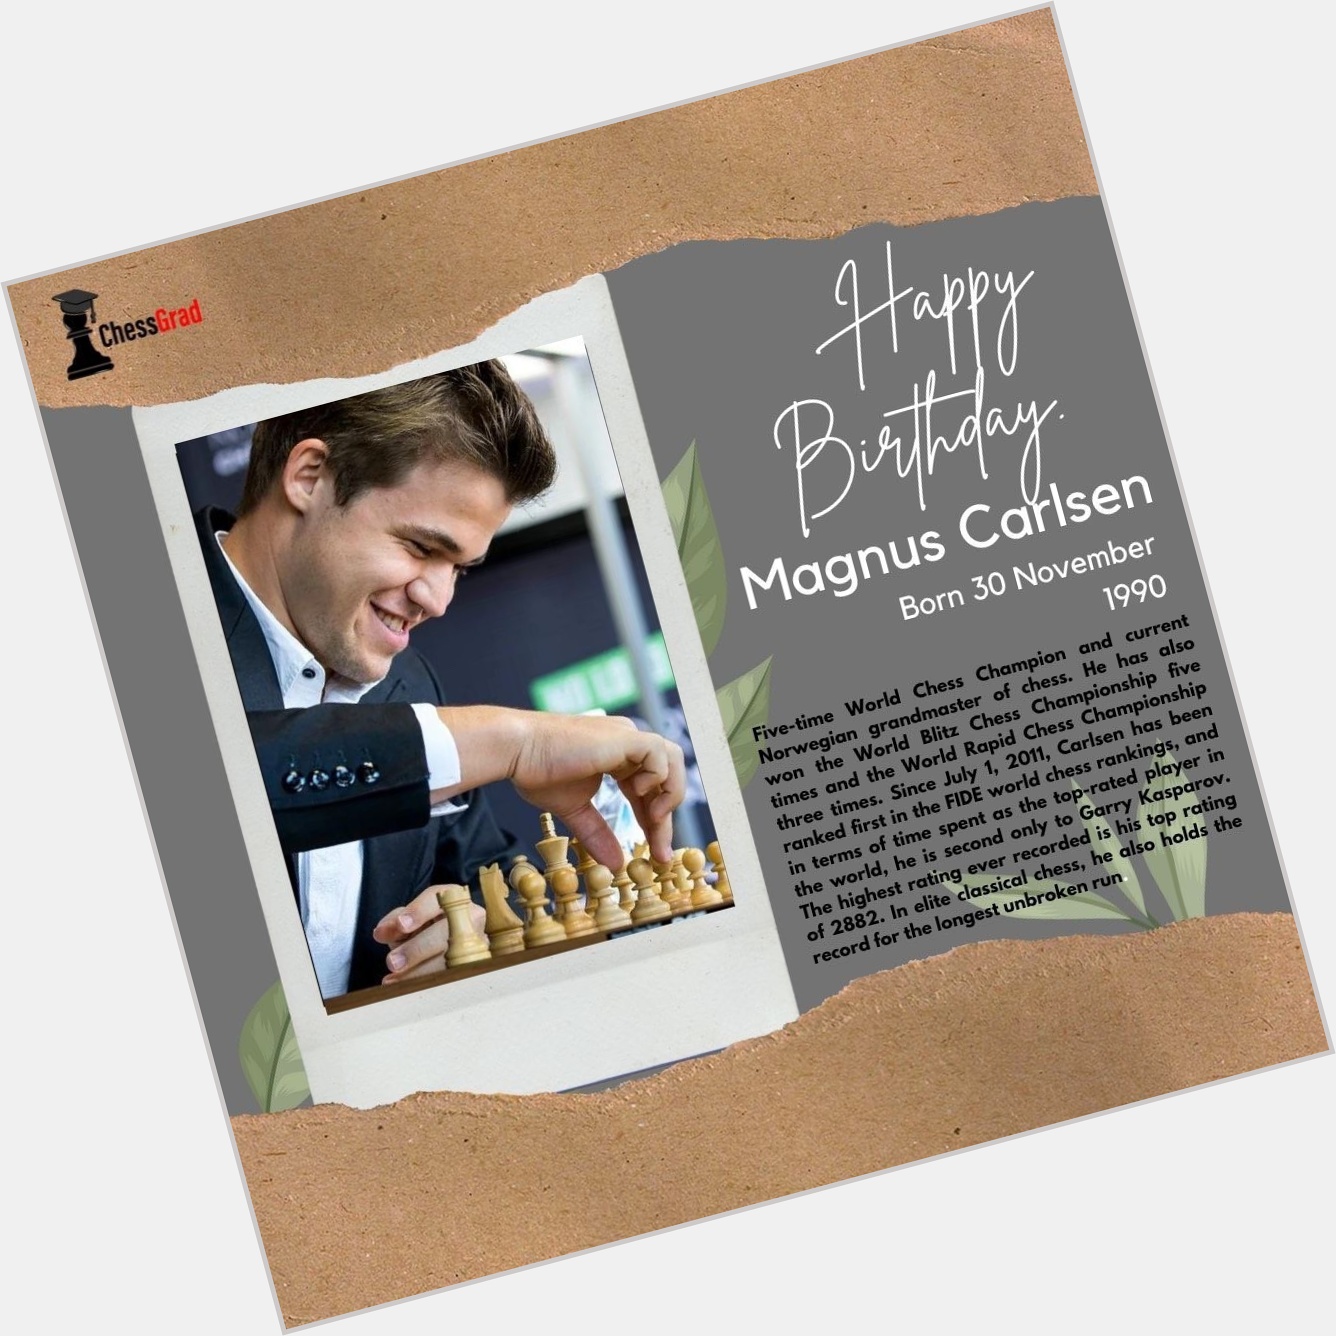 Happy birthday legend Magnus Carlsen.    